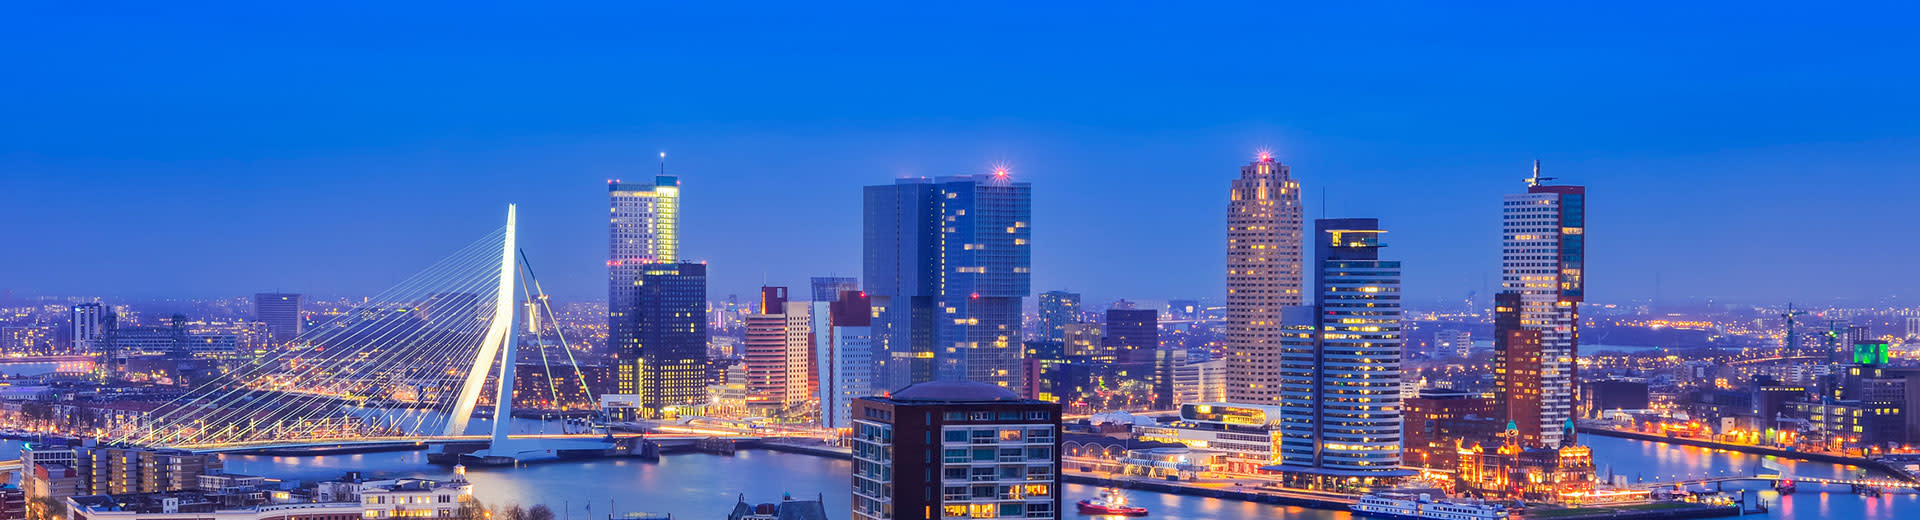 The Rotterdam skyline in the dursk light against an indigo sky.